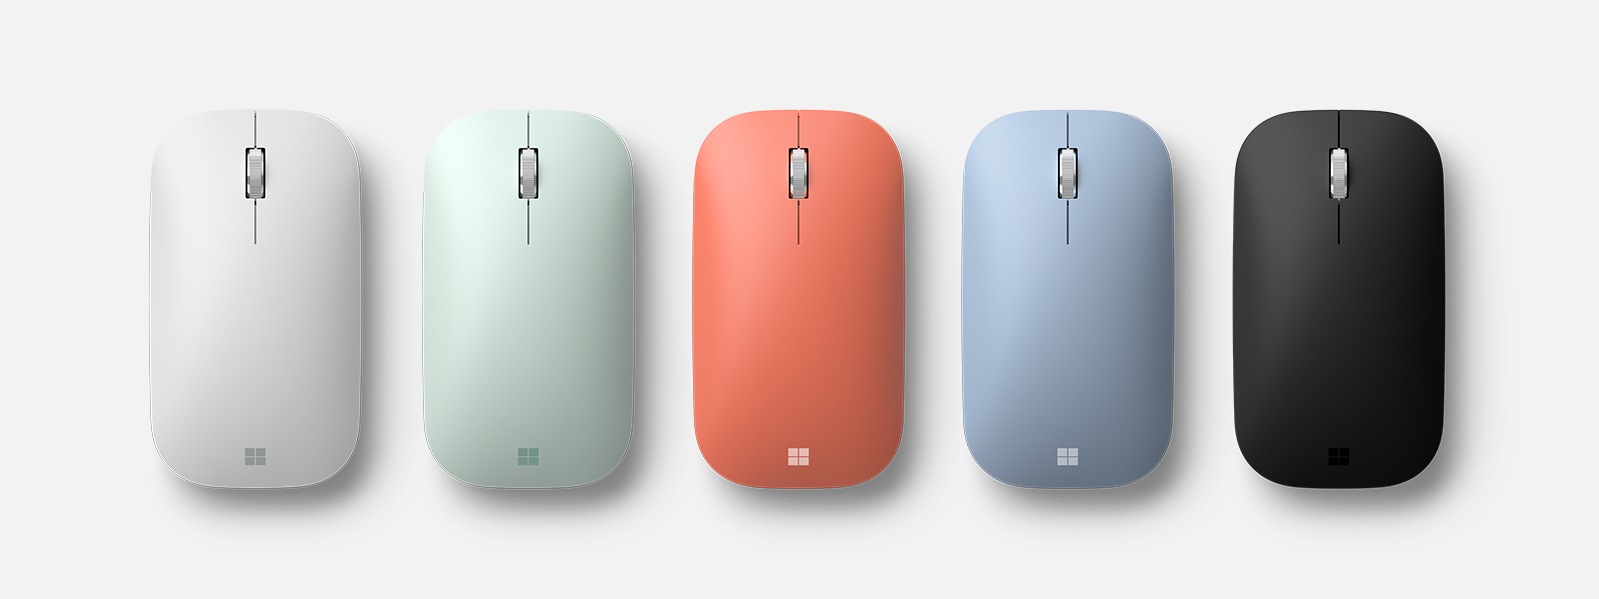 Мышь Microsoft Modern Mobile Mouse в разных цветовых исполнениях